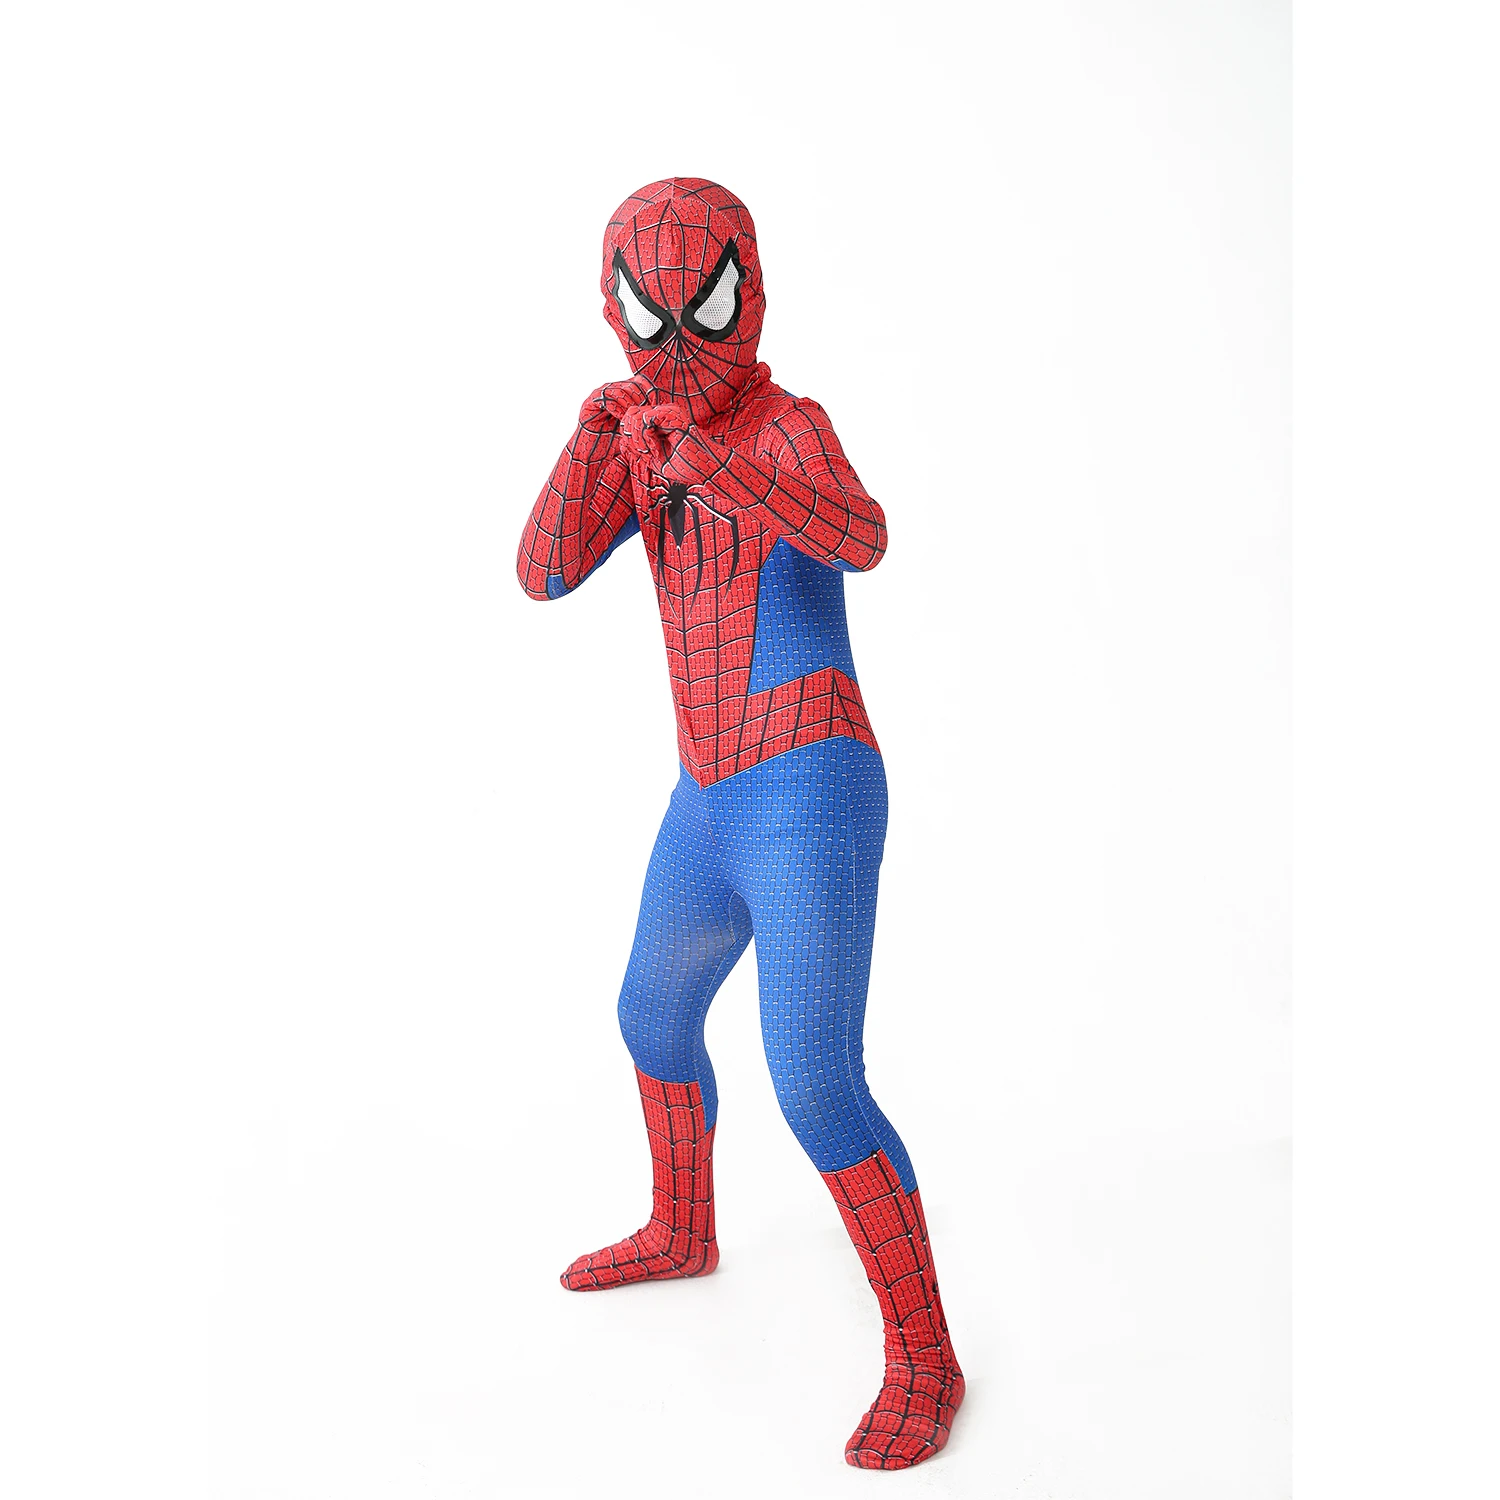 New Miles Morales lontano da casa Costume Cosplay Zentai Spiderman Costume supereroe body Spandex vestito per bambini su misura